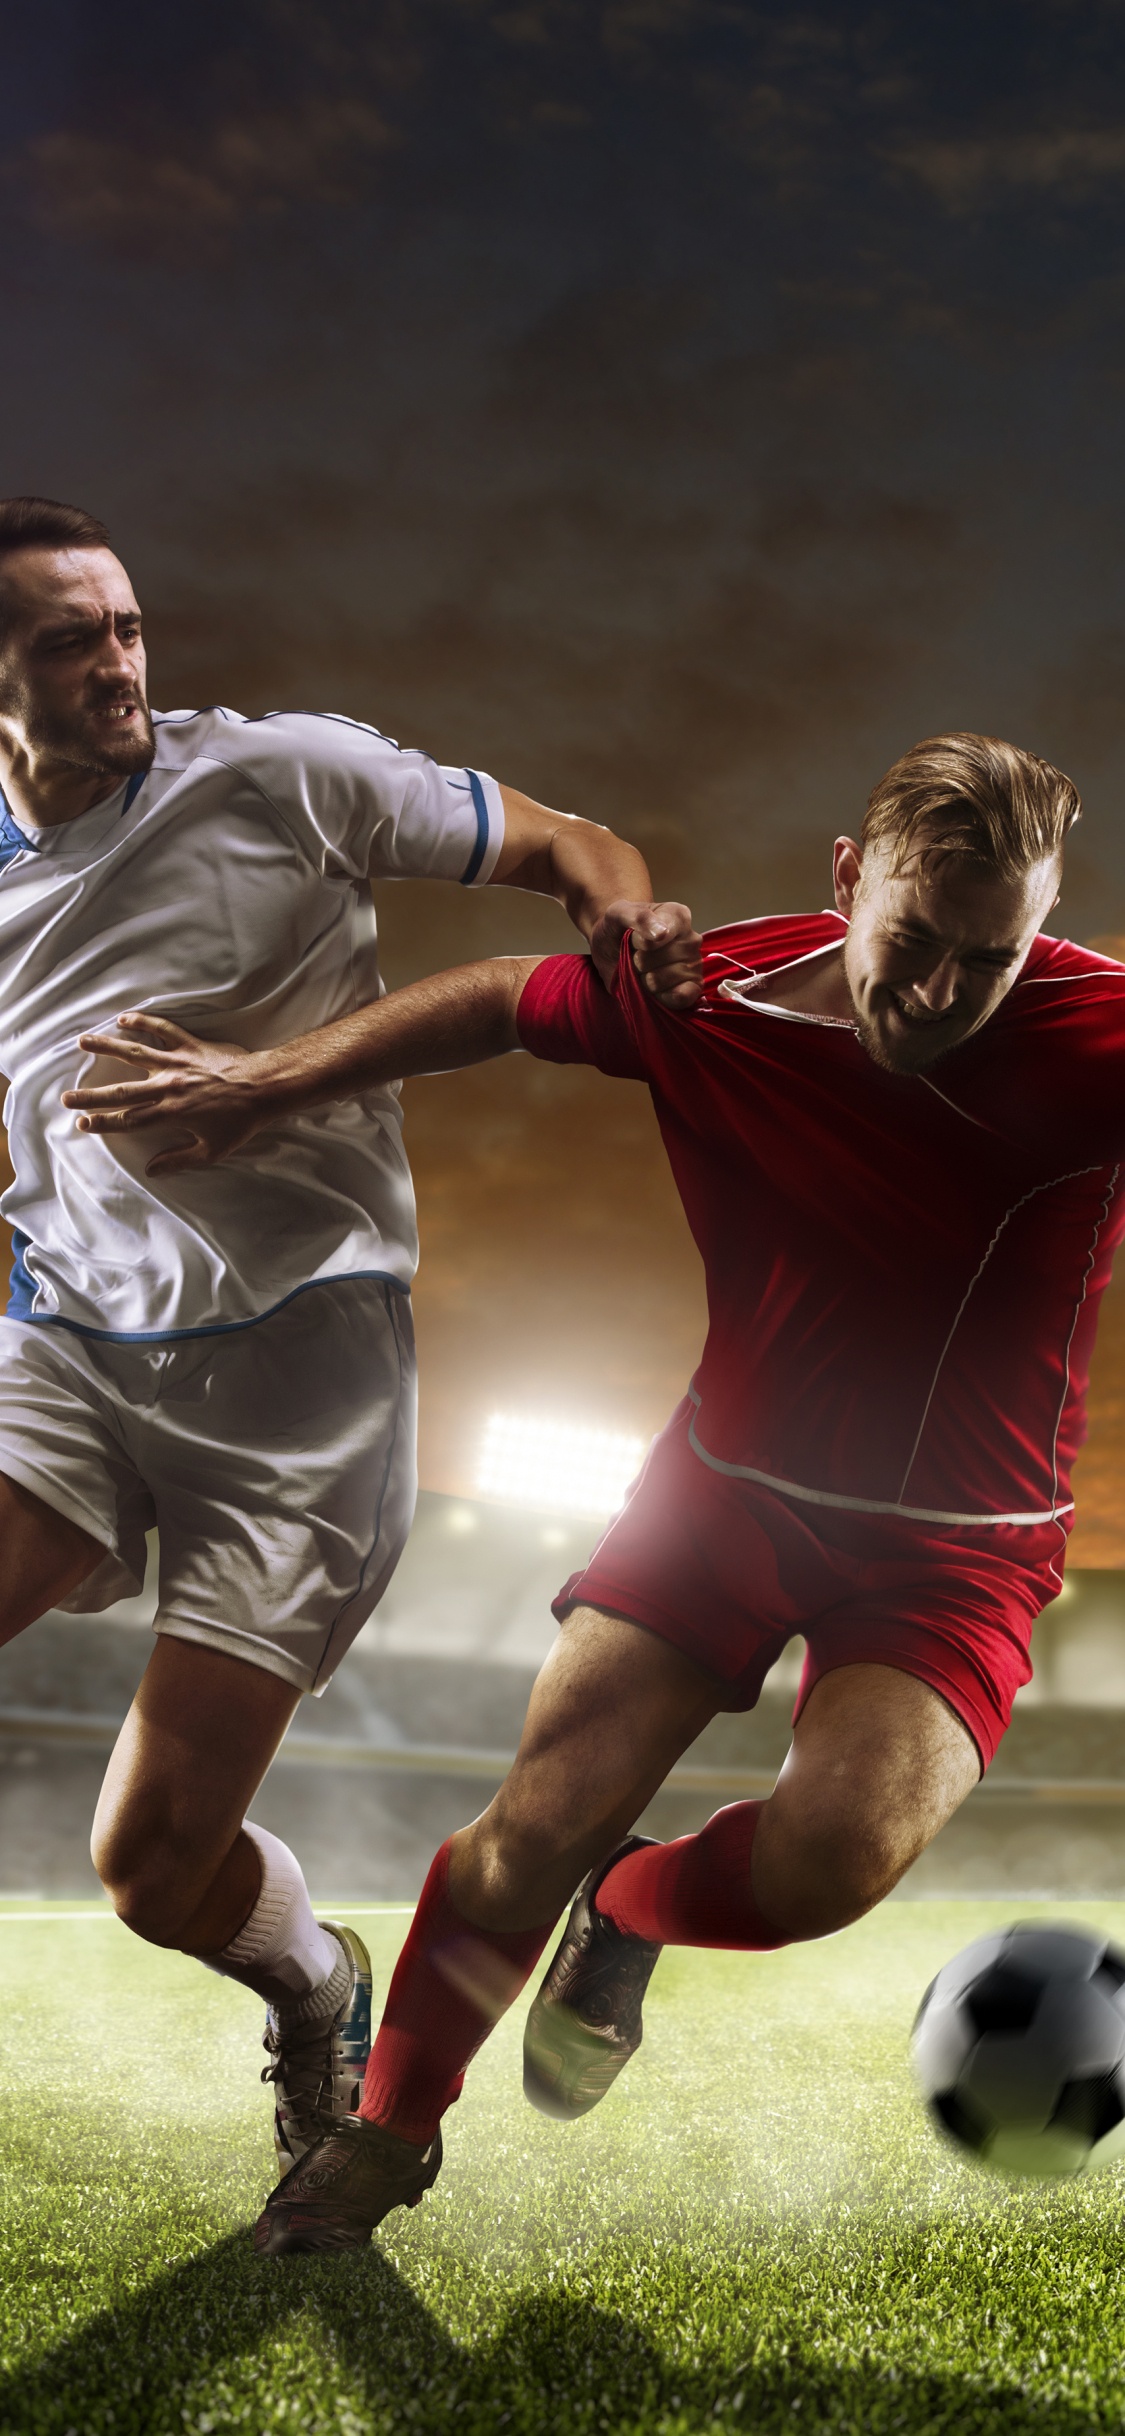 2 Männer Spielen Nachts Fußball Auf Grünem Rasen. Wallpaper in 1125x2436 Resolution